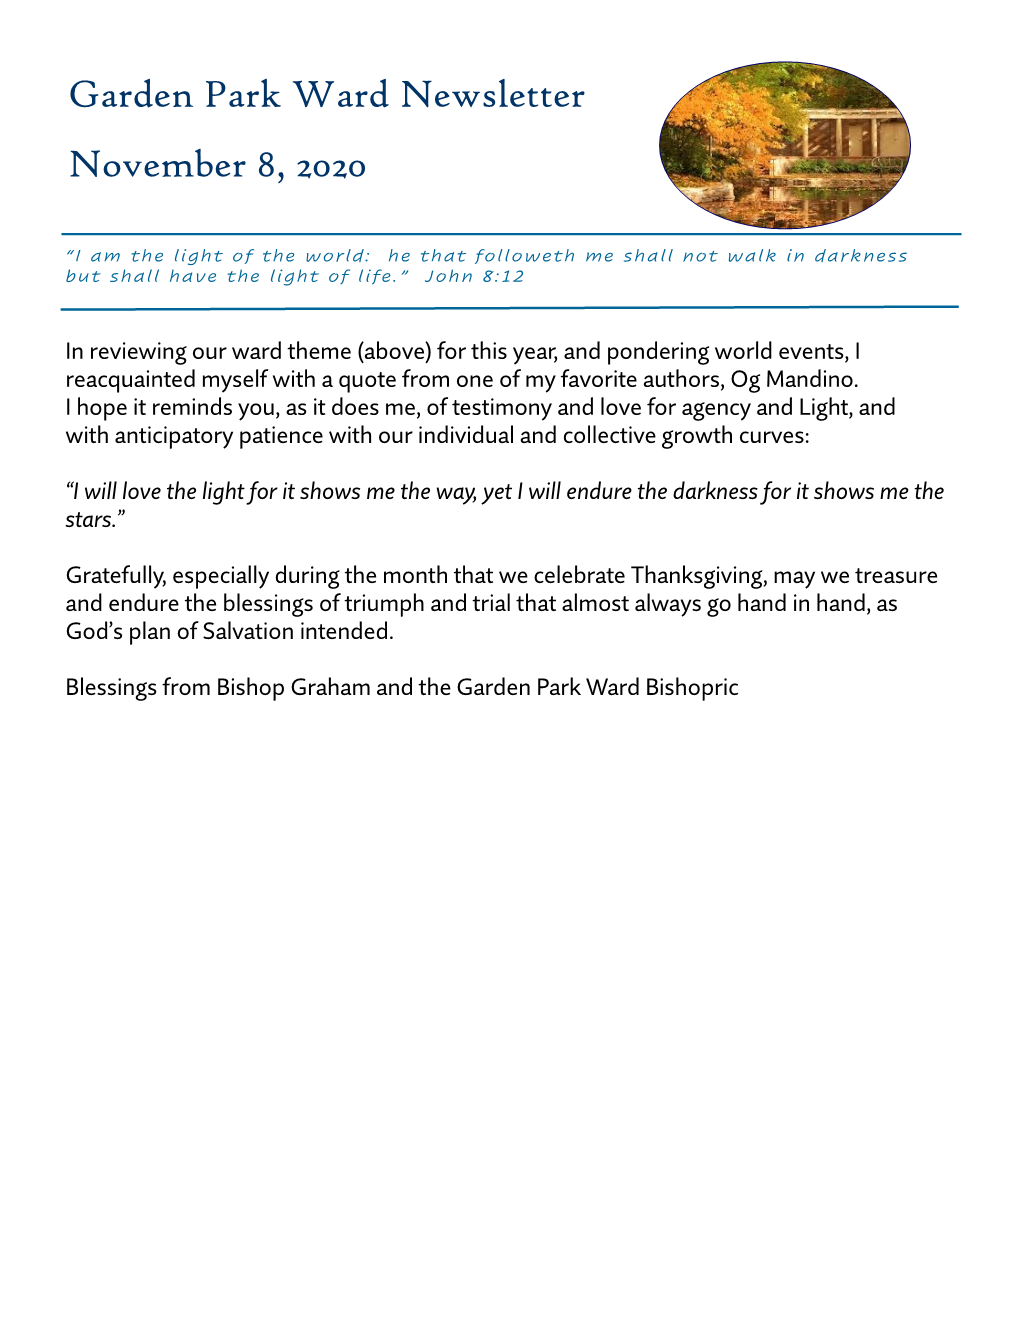 Garden Park Ward Newsletter November 8, 2020